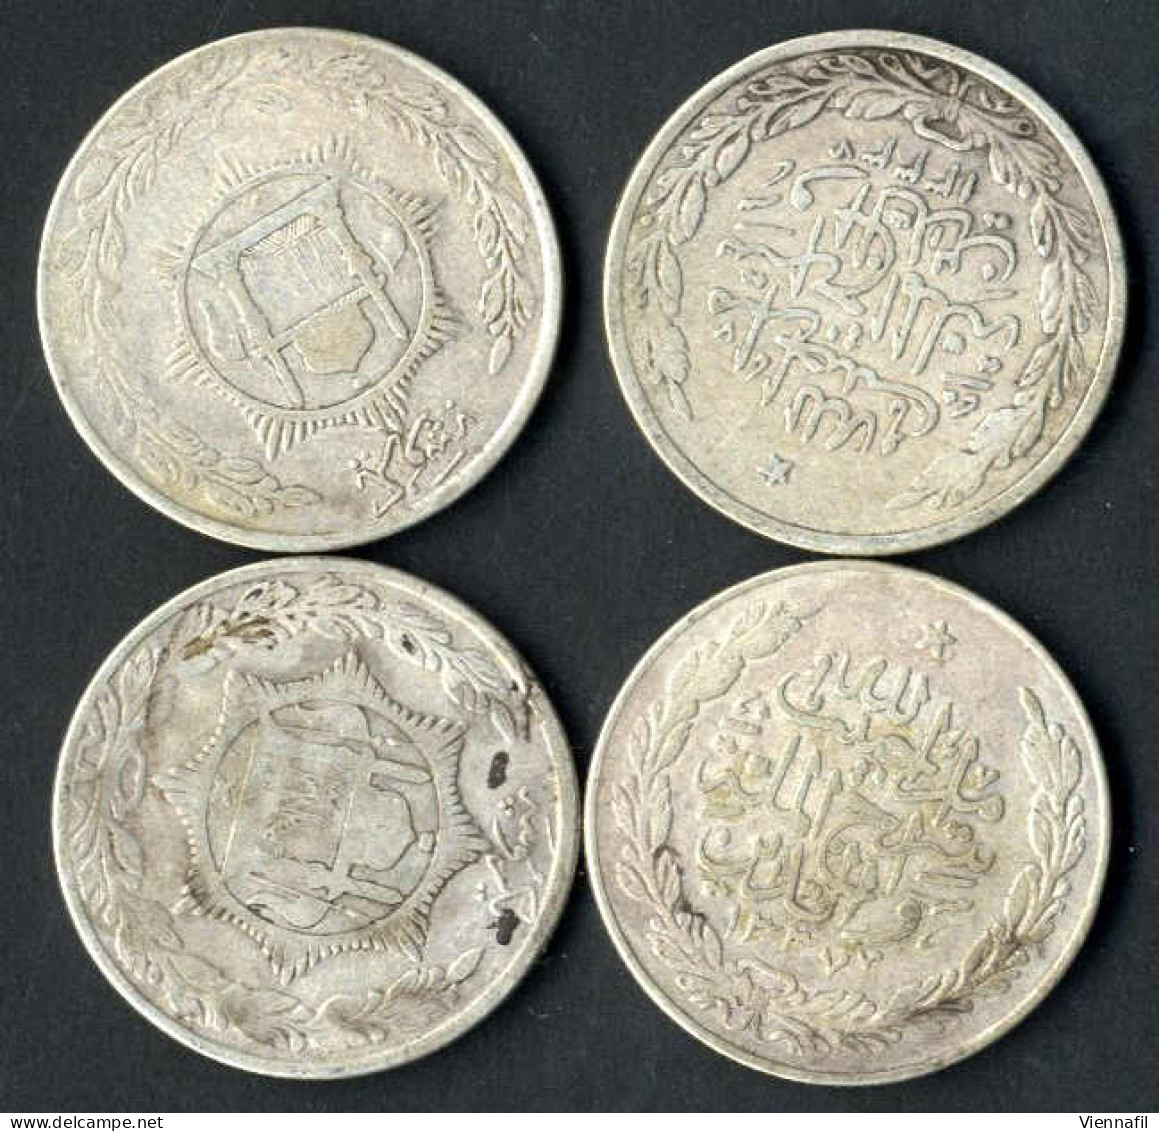 Amanullah Shah, 1319-1337AH 1901-1919, Rupie Silber, 1332,1333,1334,1337 Münzstätte Unbekannt, KM 853(877), Schön, 5 Stü - Afganistán